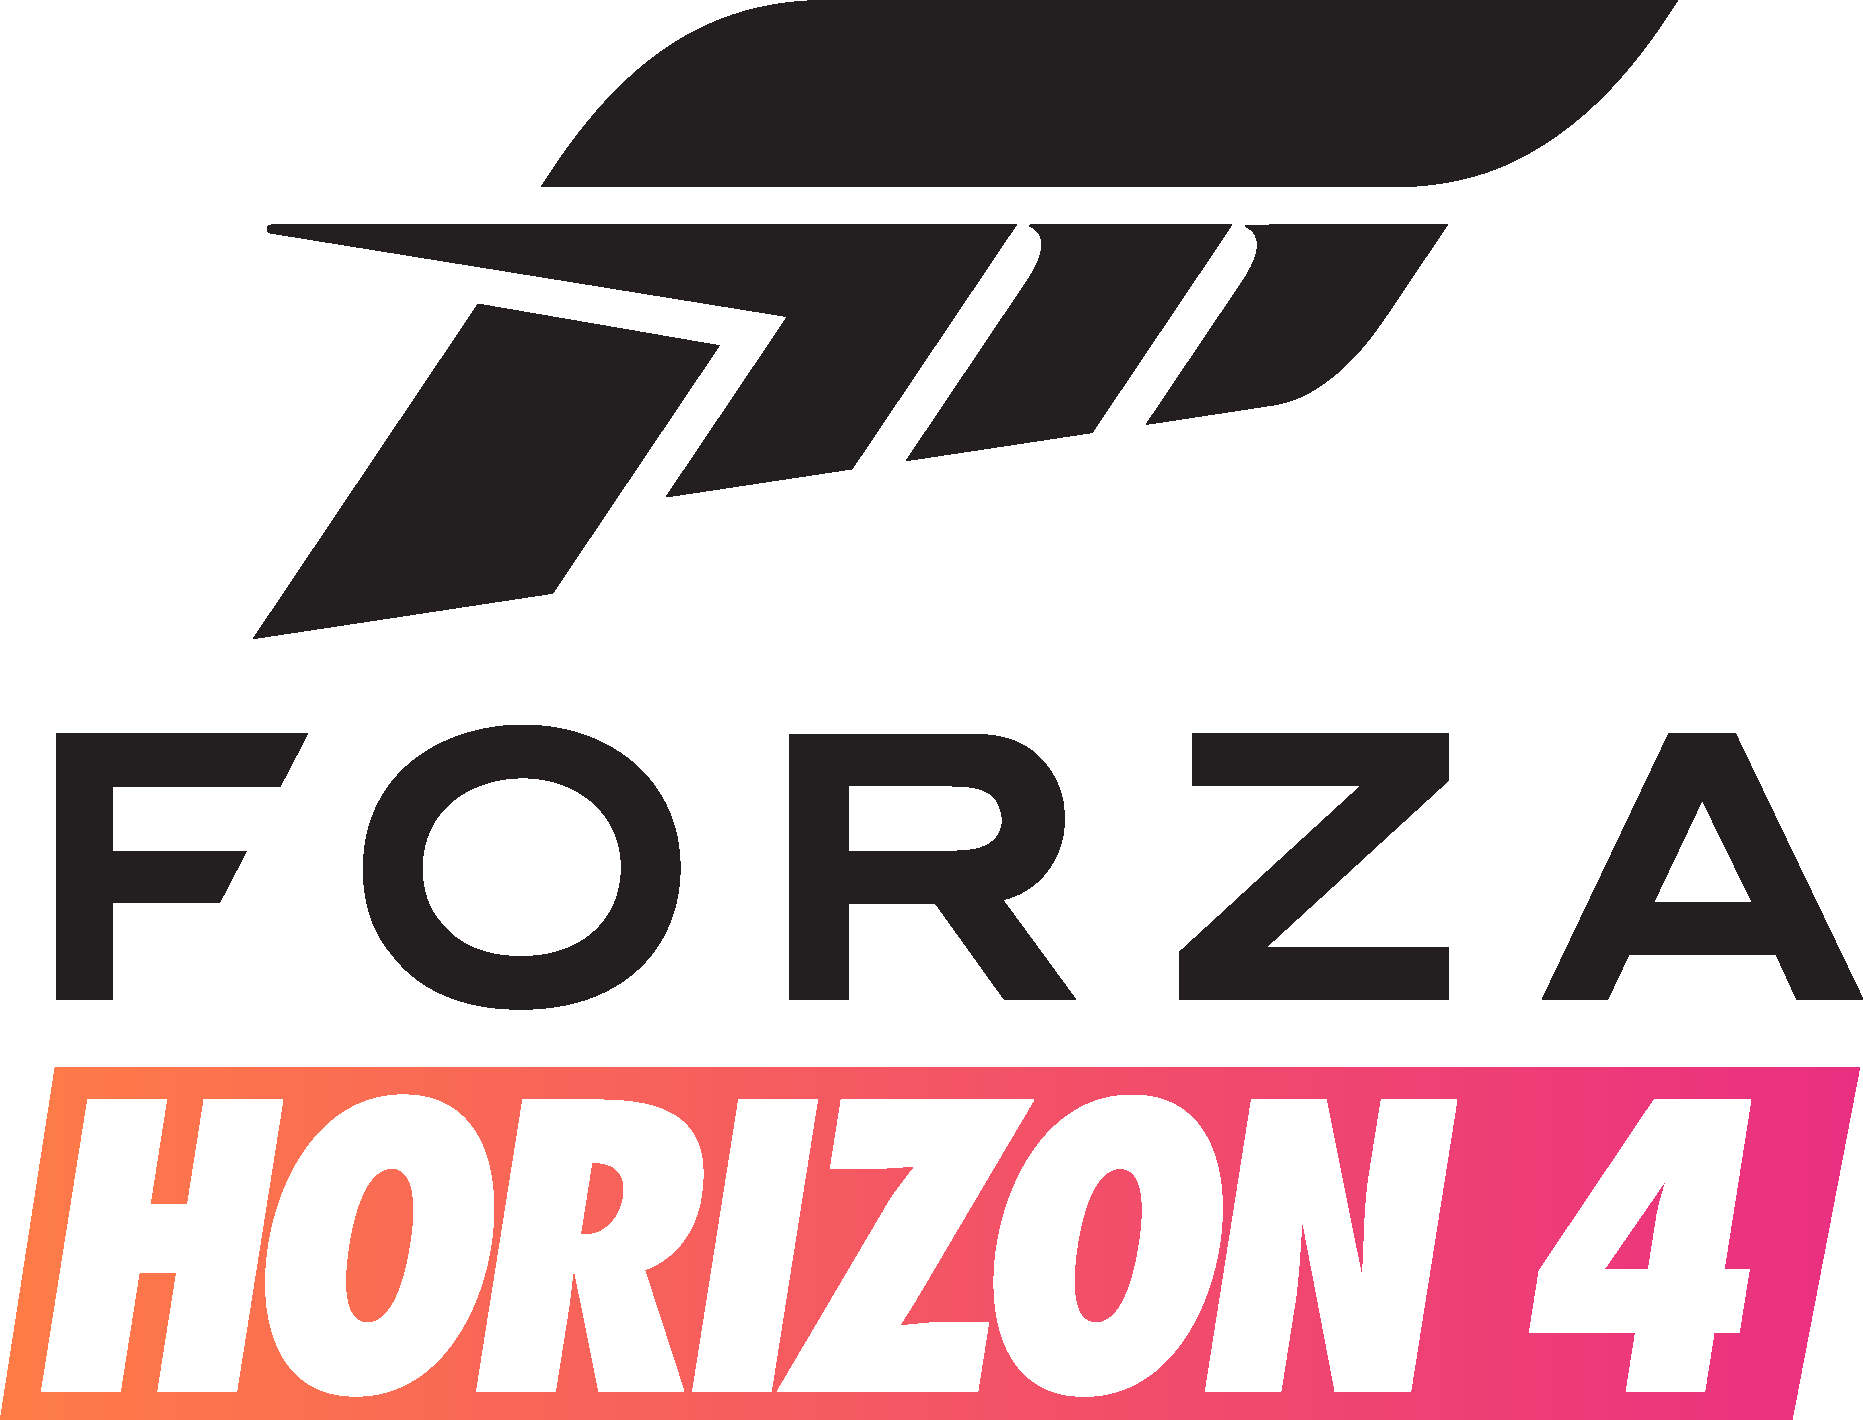 Forza Horizon 4 logo. Forza Horizon 3 лого. Эмблема Форза хорайзен 5. Ярлык Forza Horizon 5. Logo 5 4